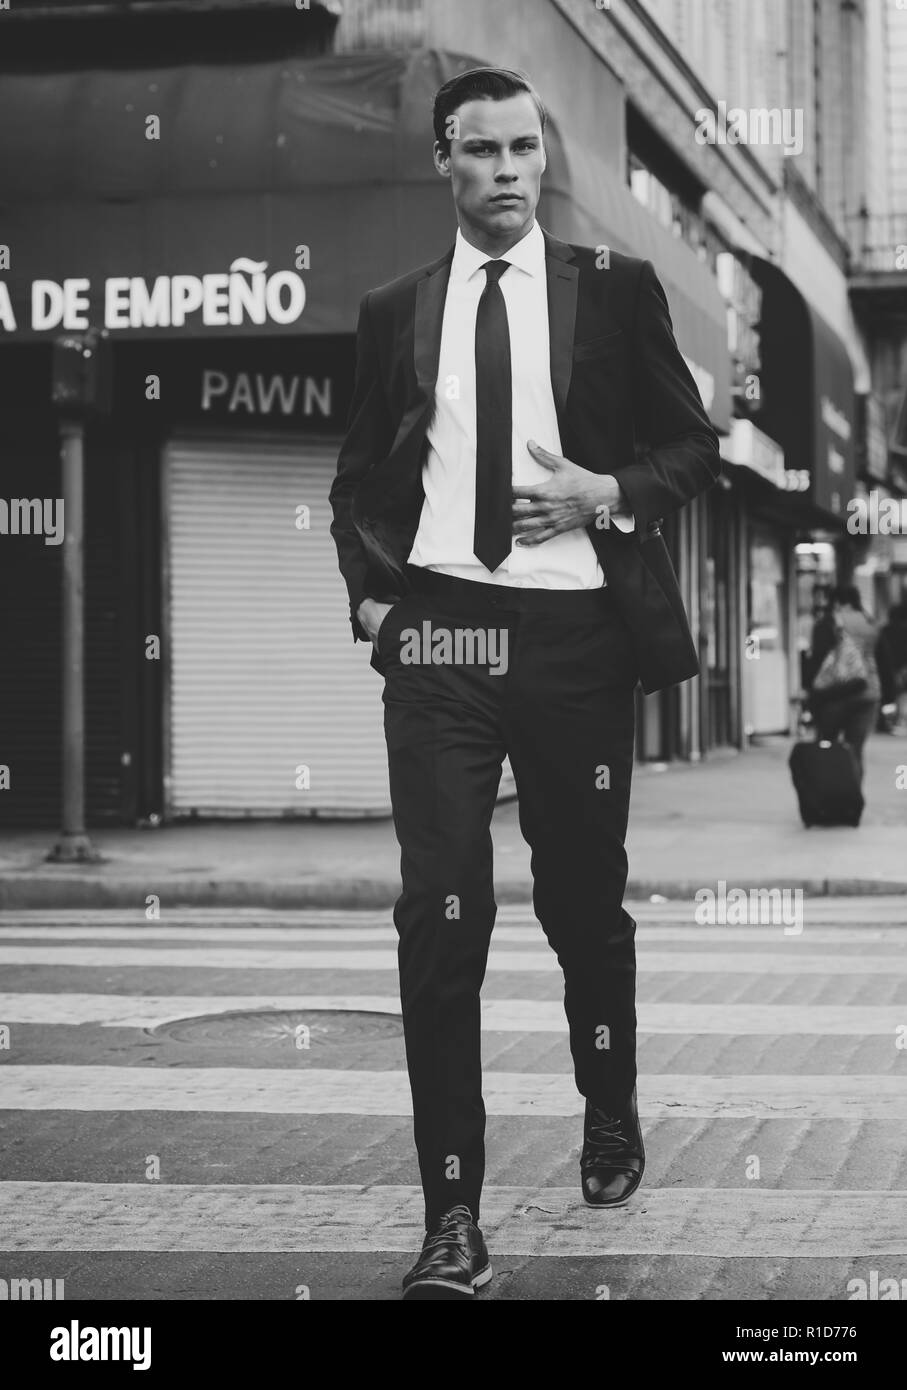 Un ritratto in bianco e nero di un modello maschile camminare per le strade del centro cittadino di Los Angeles. Lui è bello e ben vestito con un abito nero e cravatta. Foto Stock